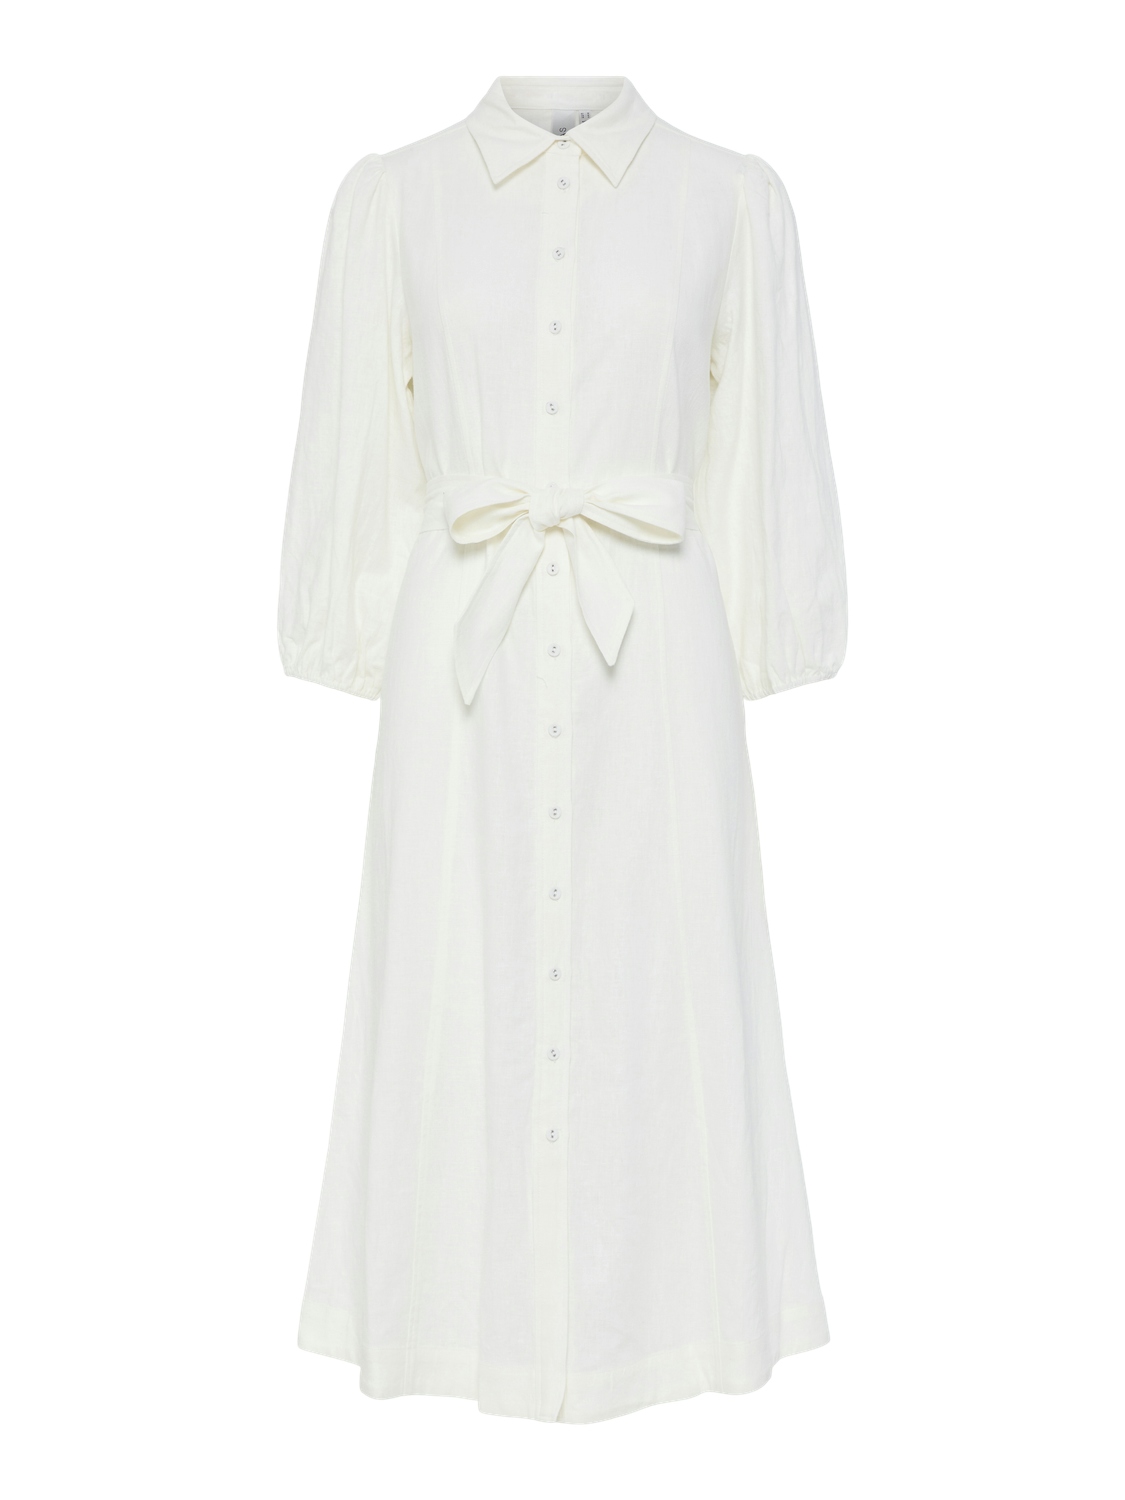 YASFLAXY 3/4 linen shirt dress White